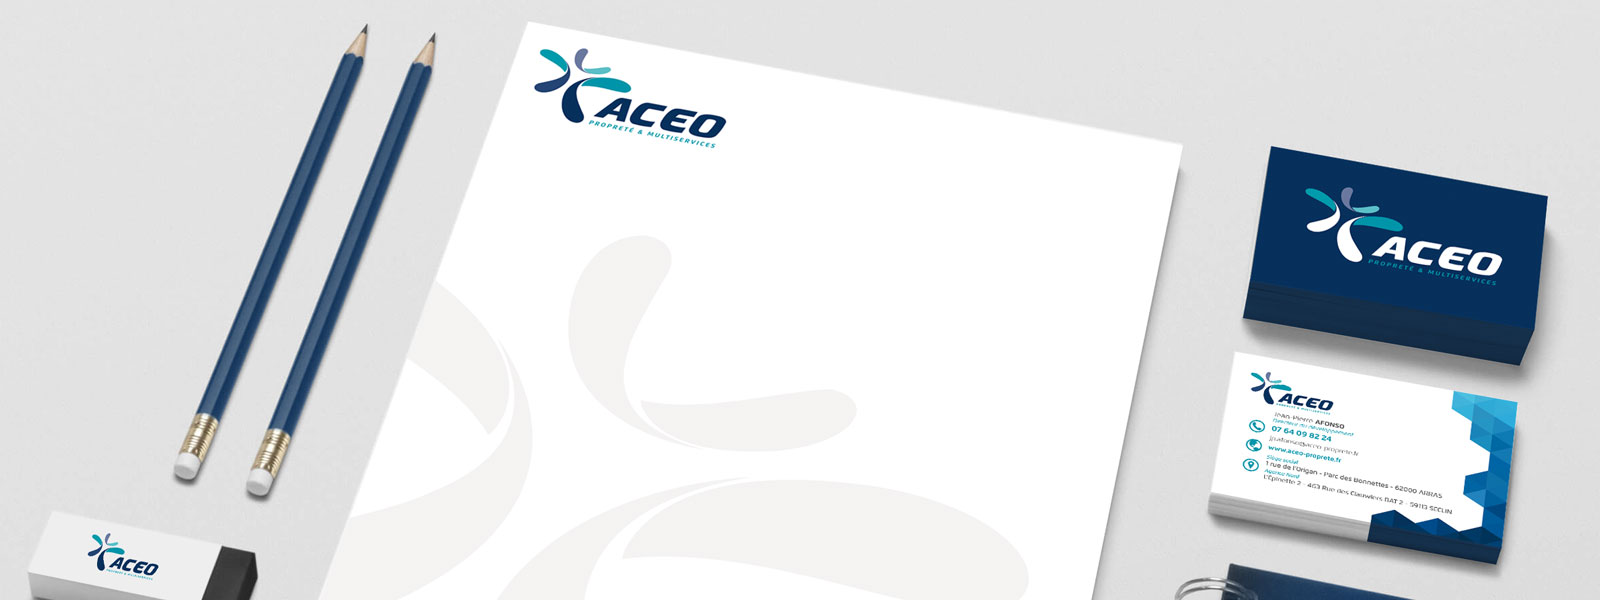 création d'une charte graphique pour la société Aceo